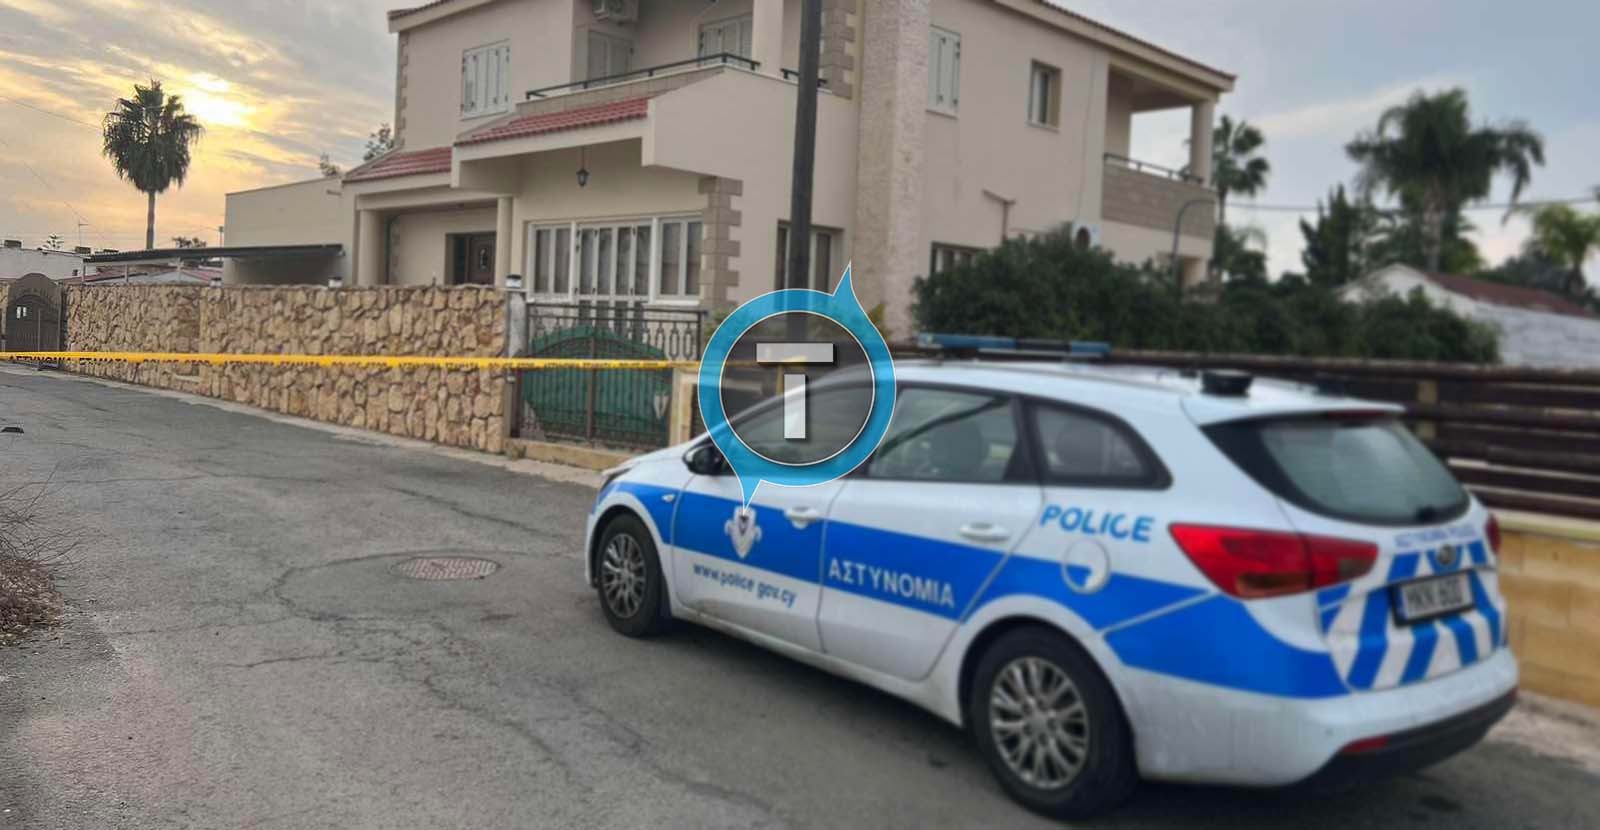 Φωτογραφία από το σημείο που σημειώθηκε η έκρηξη τα ξημερώματα - Σε οικία Ελληνοκύπριου η βόμβα 